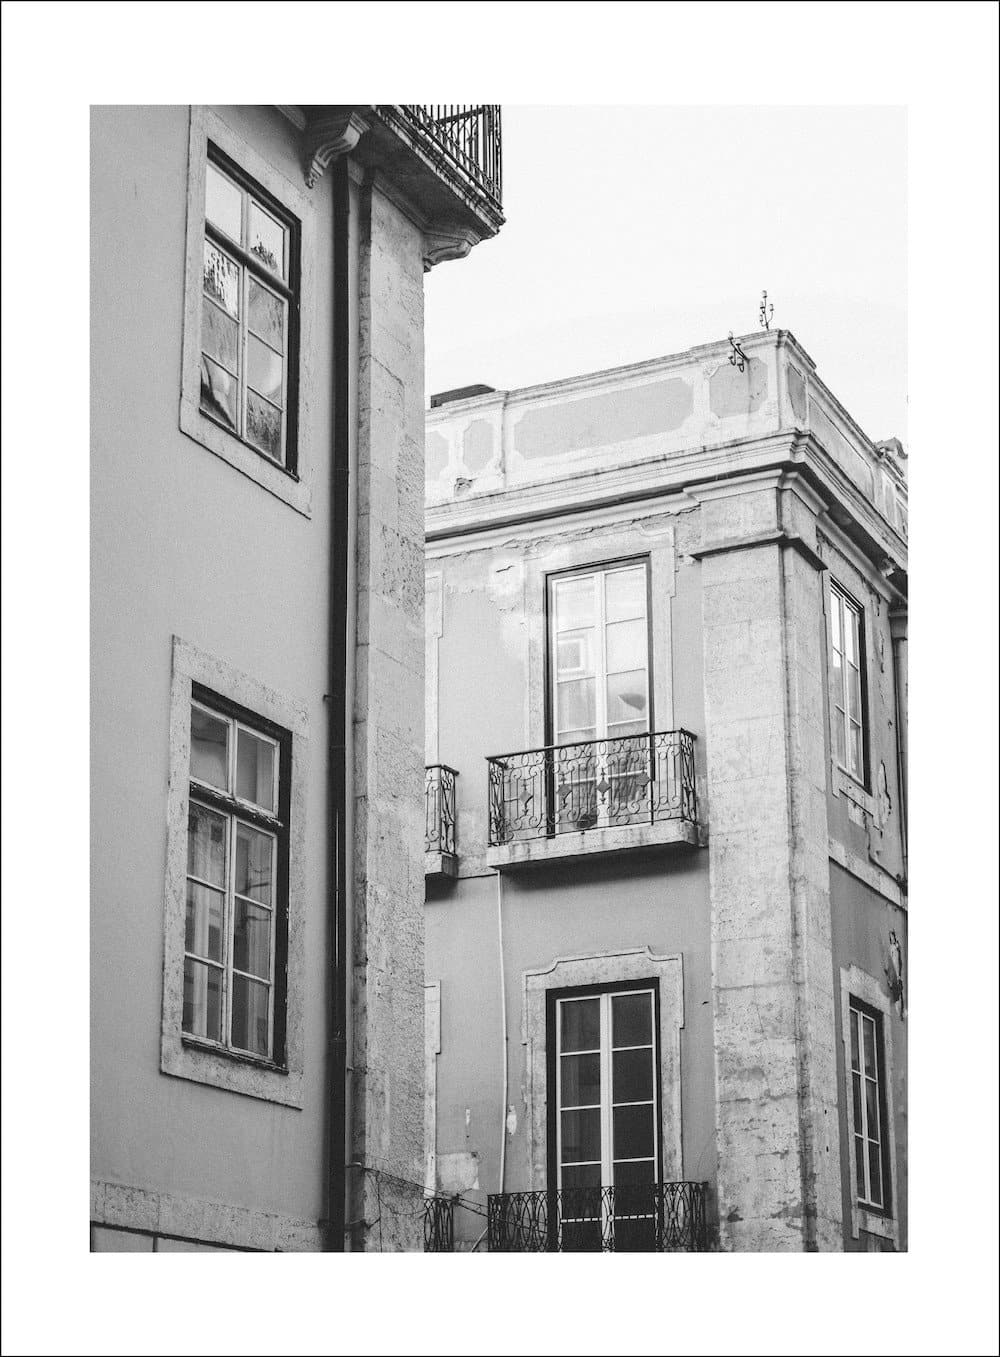 Lisbon - Lively Bay - Posters - Livelybay.com